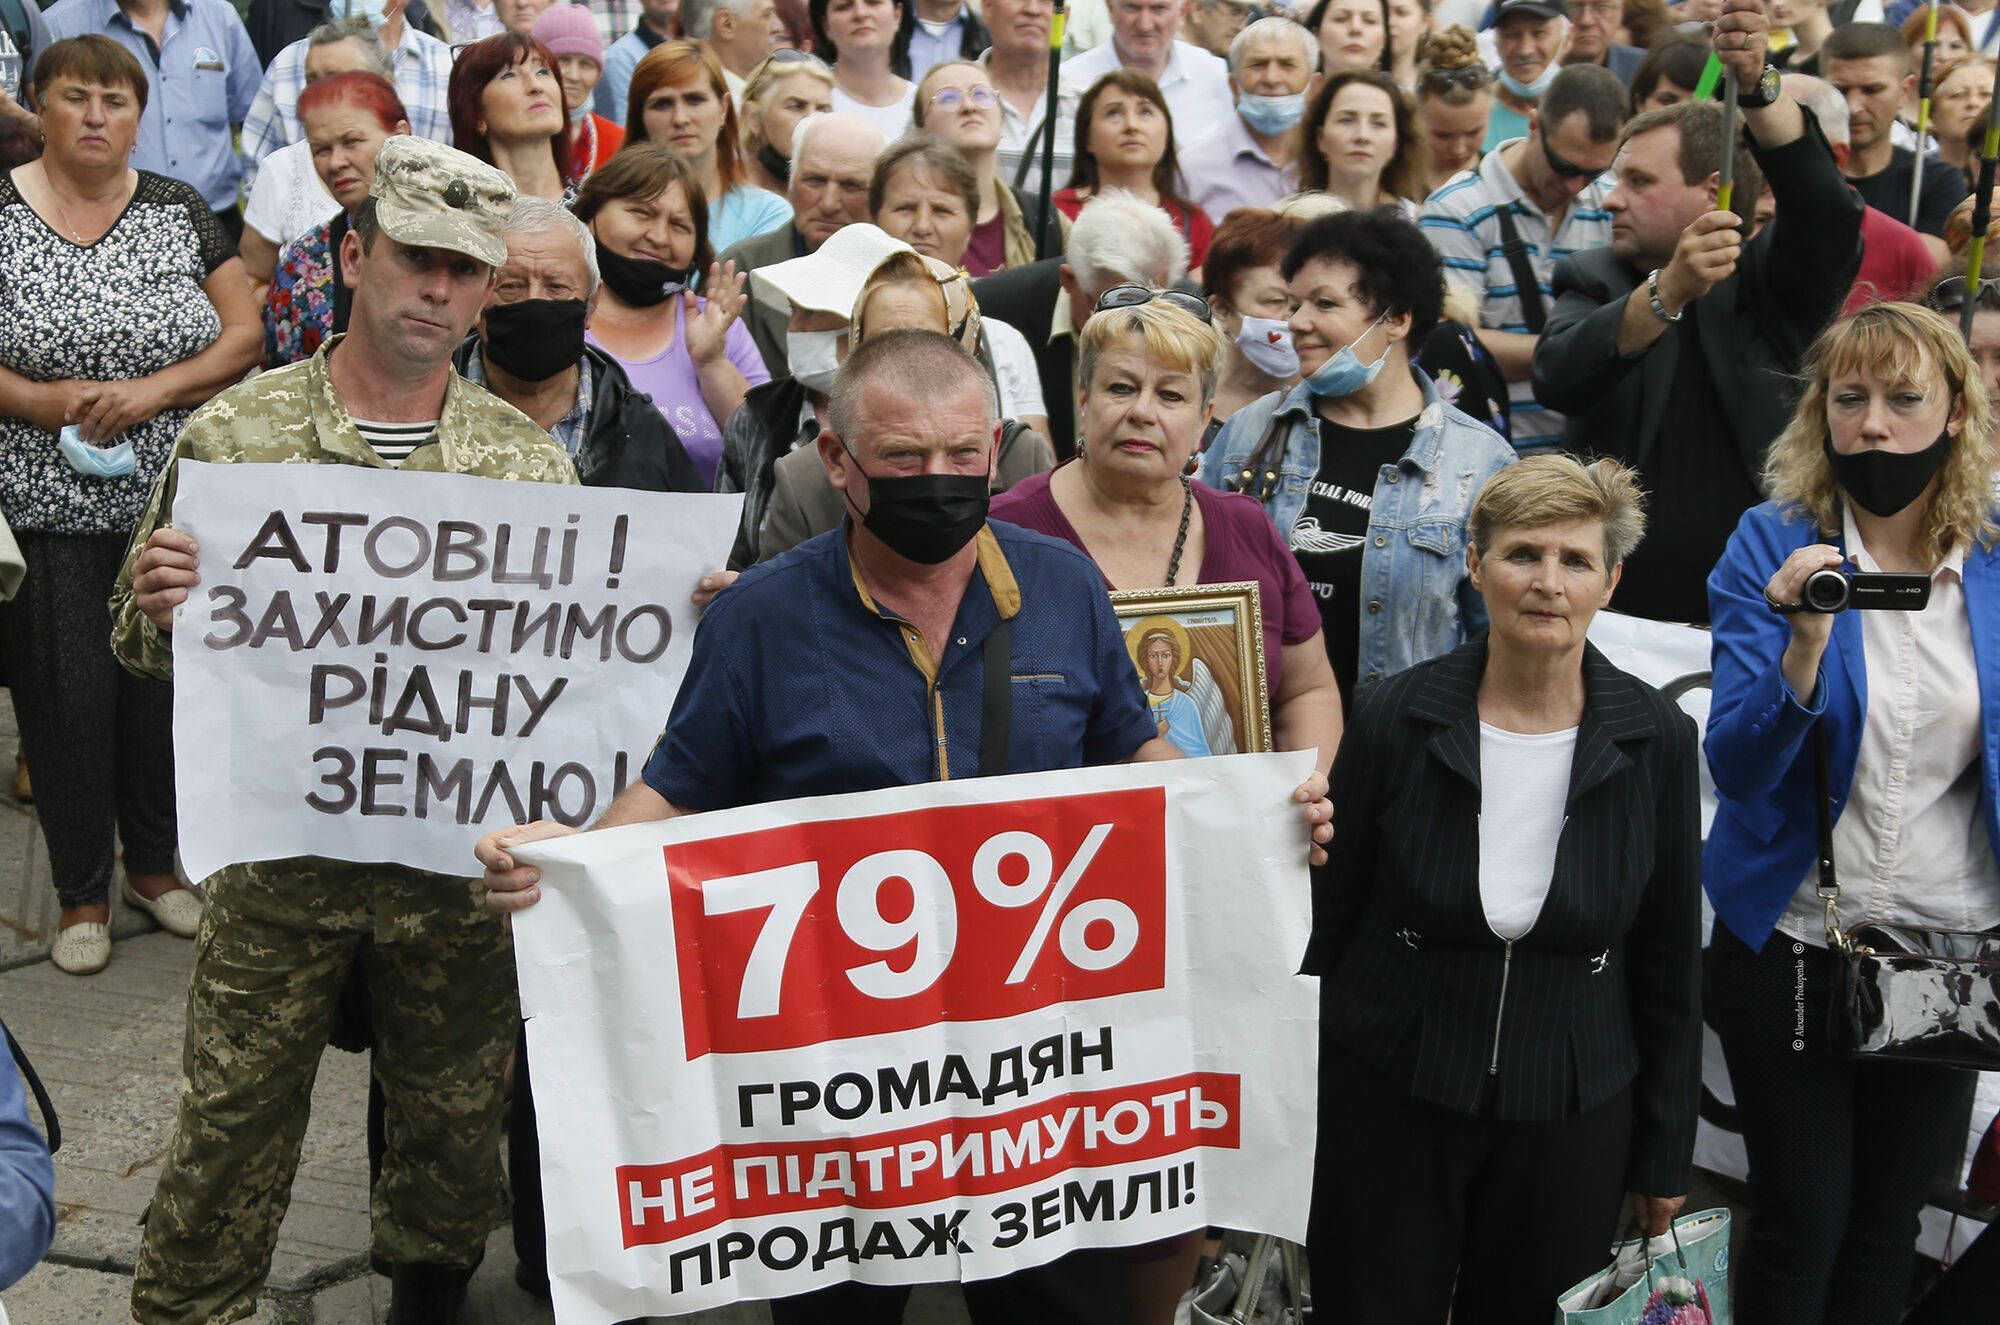 По мнению Тимошенко, многолюдное собрание на Полтавщине может стать началом национального движения аграриев